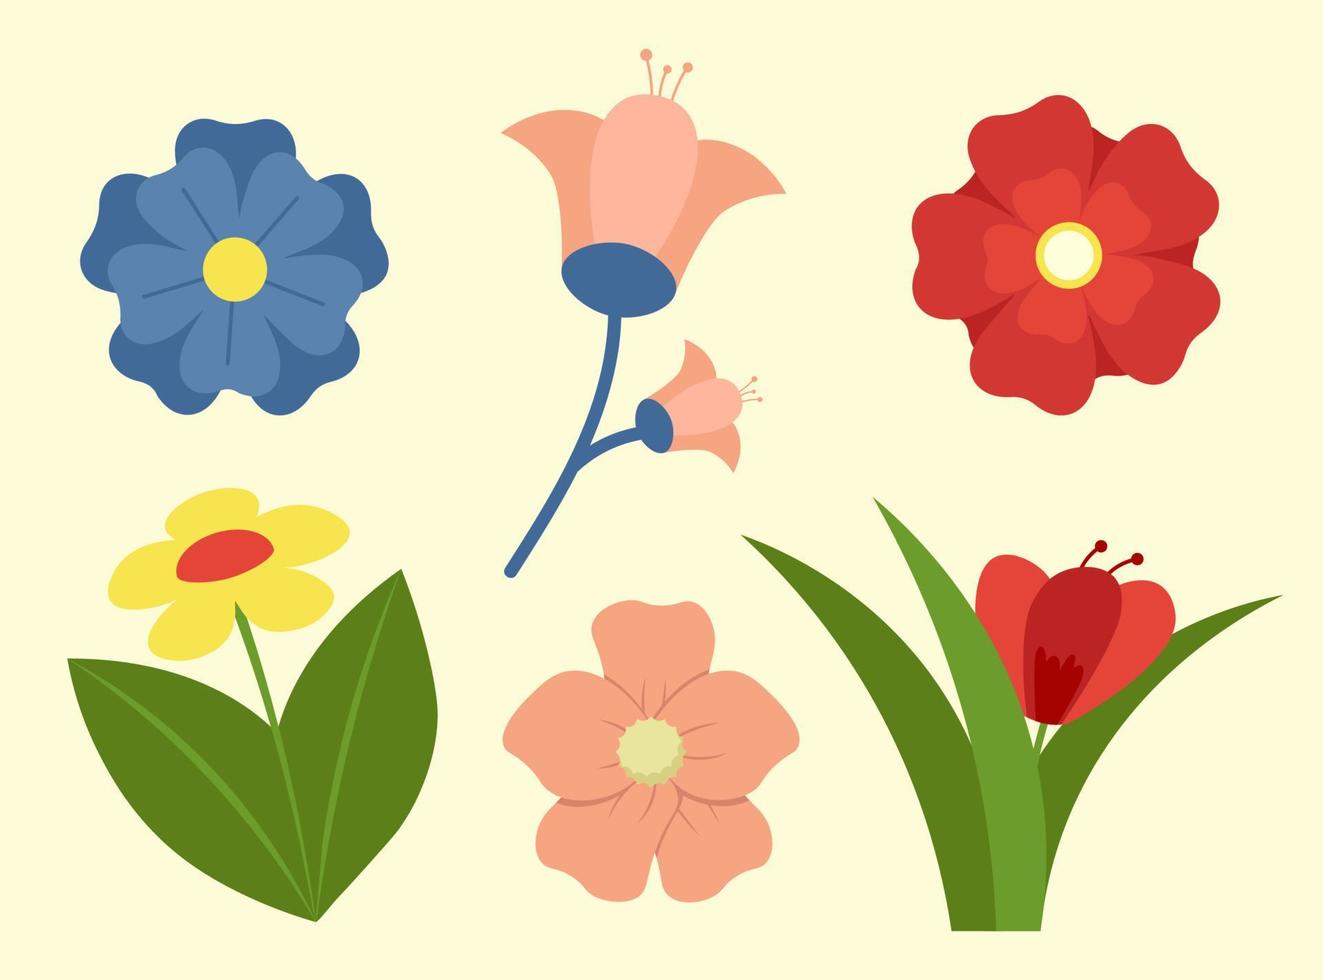 verzameling van voorjaar bloemen, ontwerp elementen met bloei vector illustratie in vlak stijl